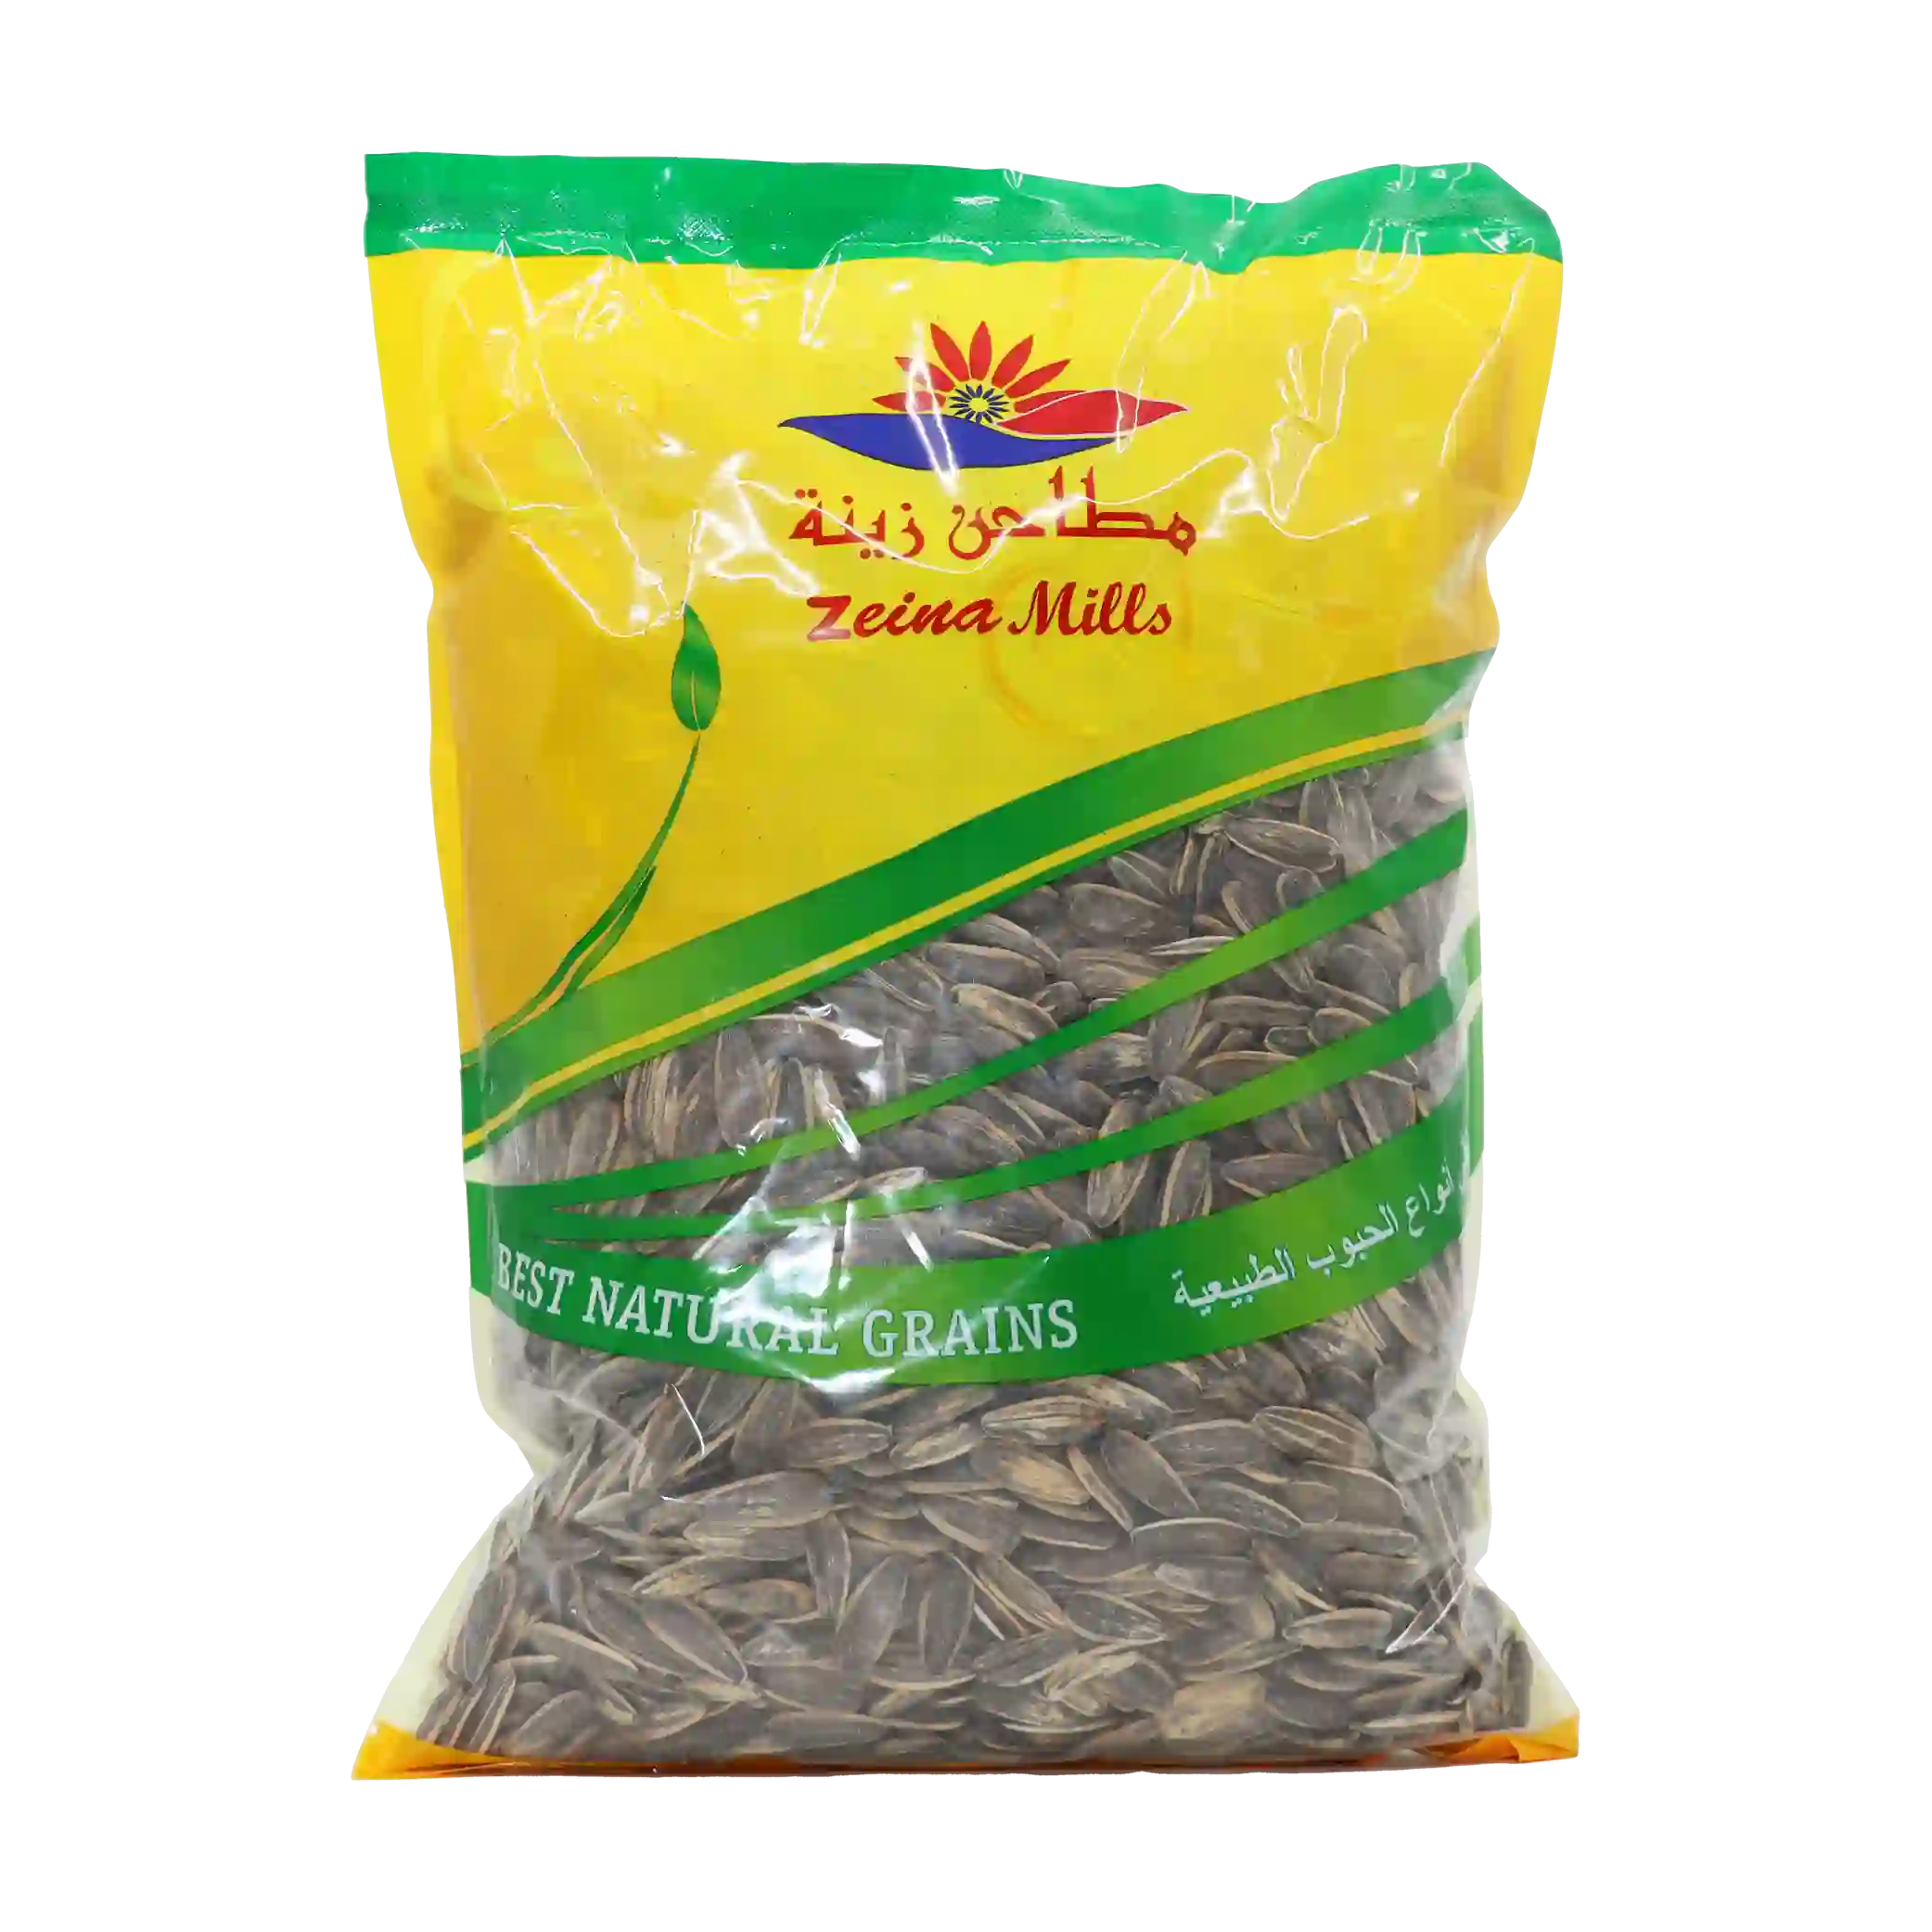 KAC -Roasted sunflower seeds - 1 kilo